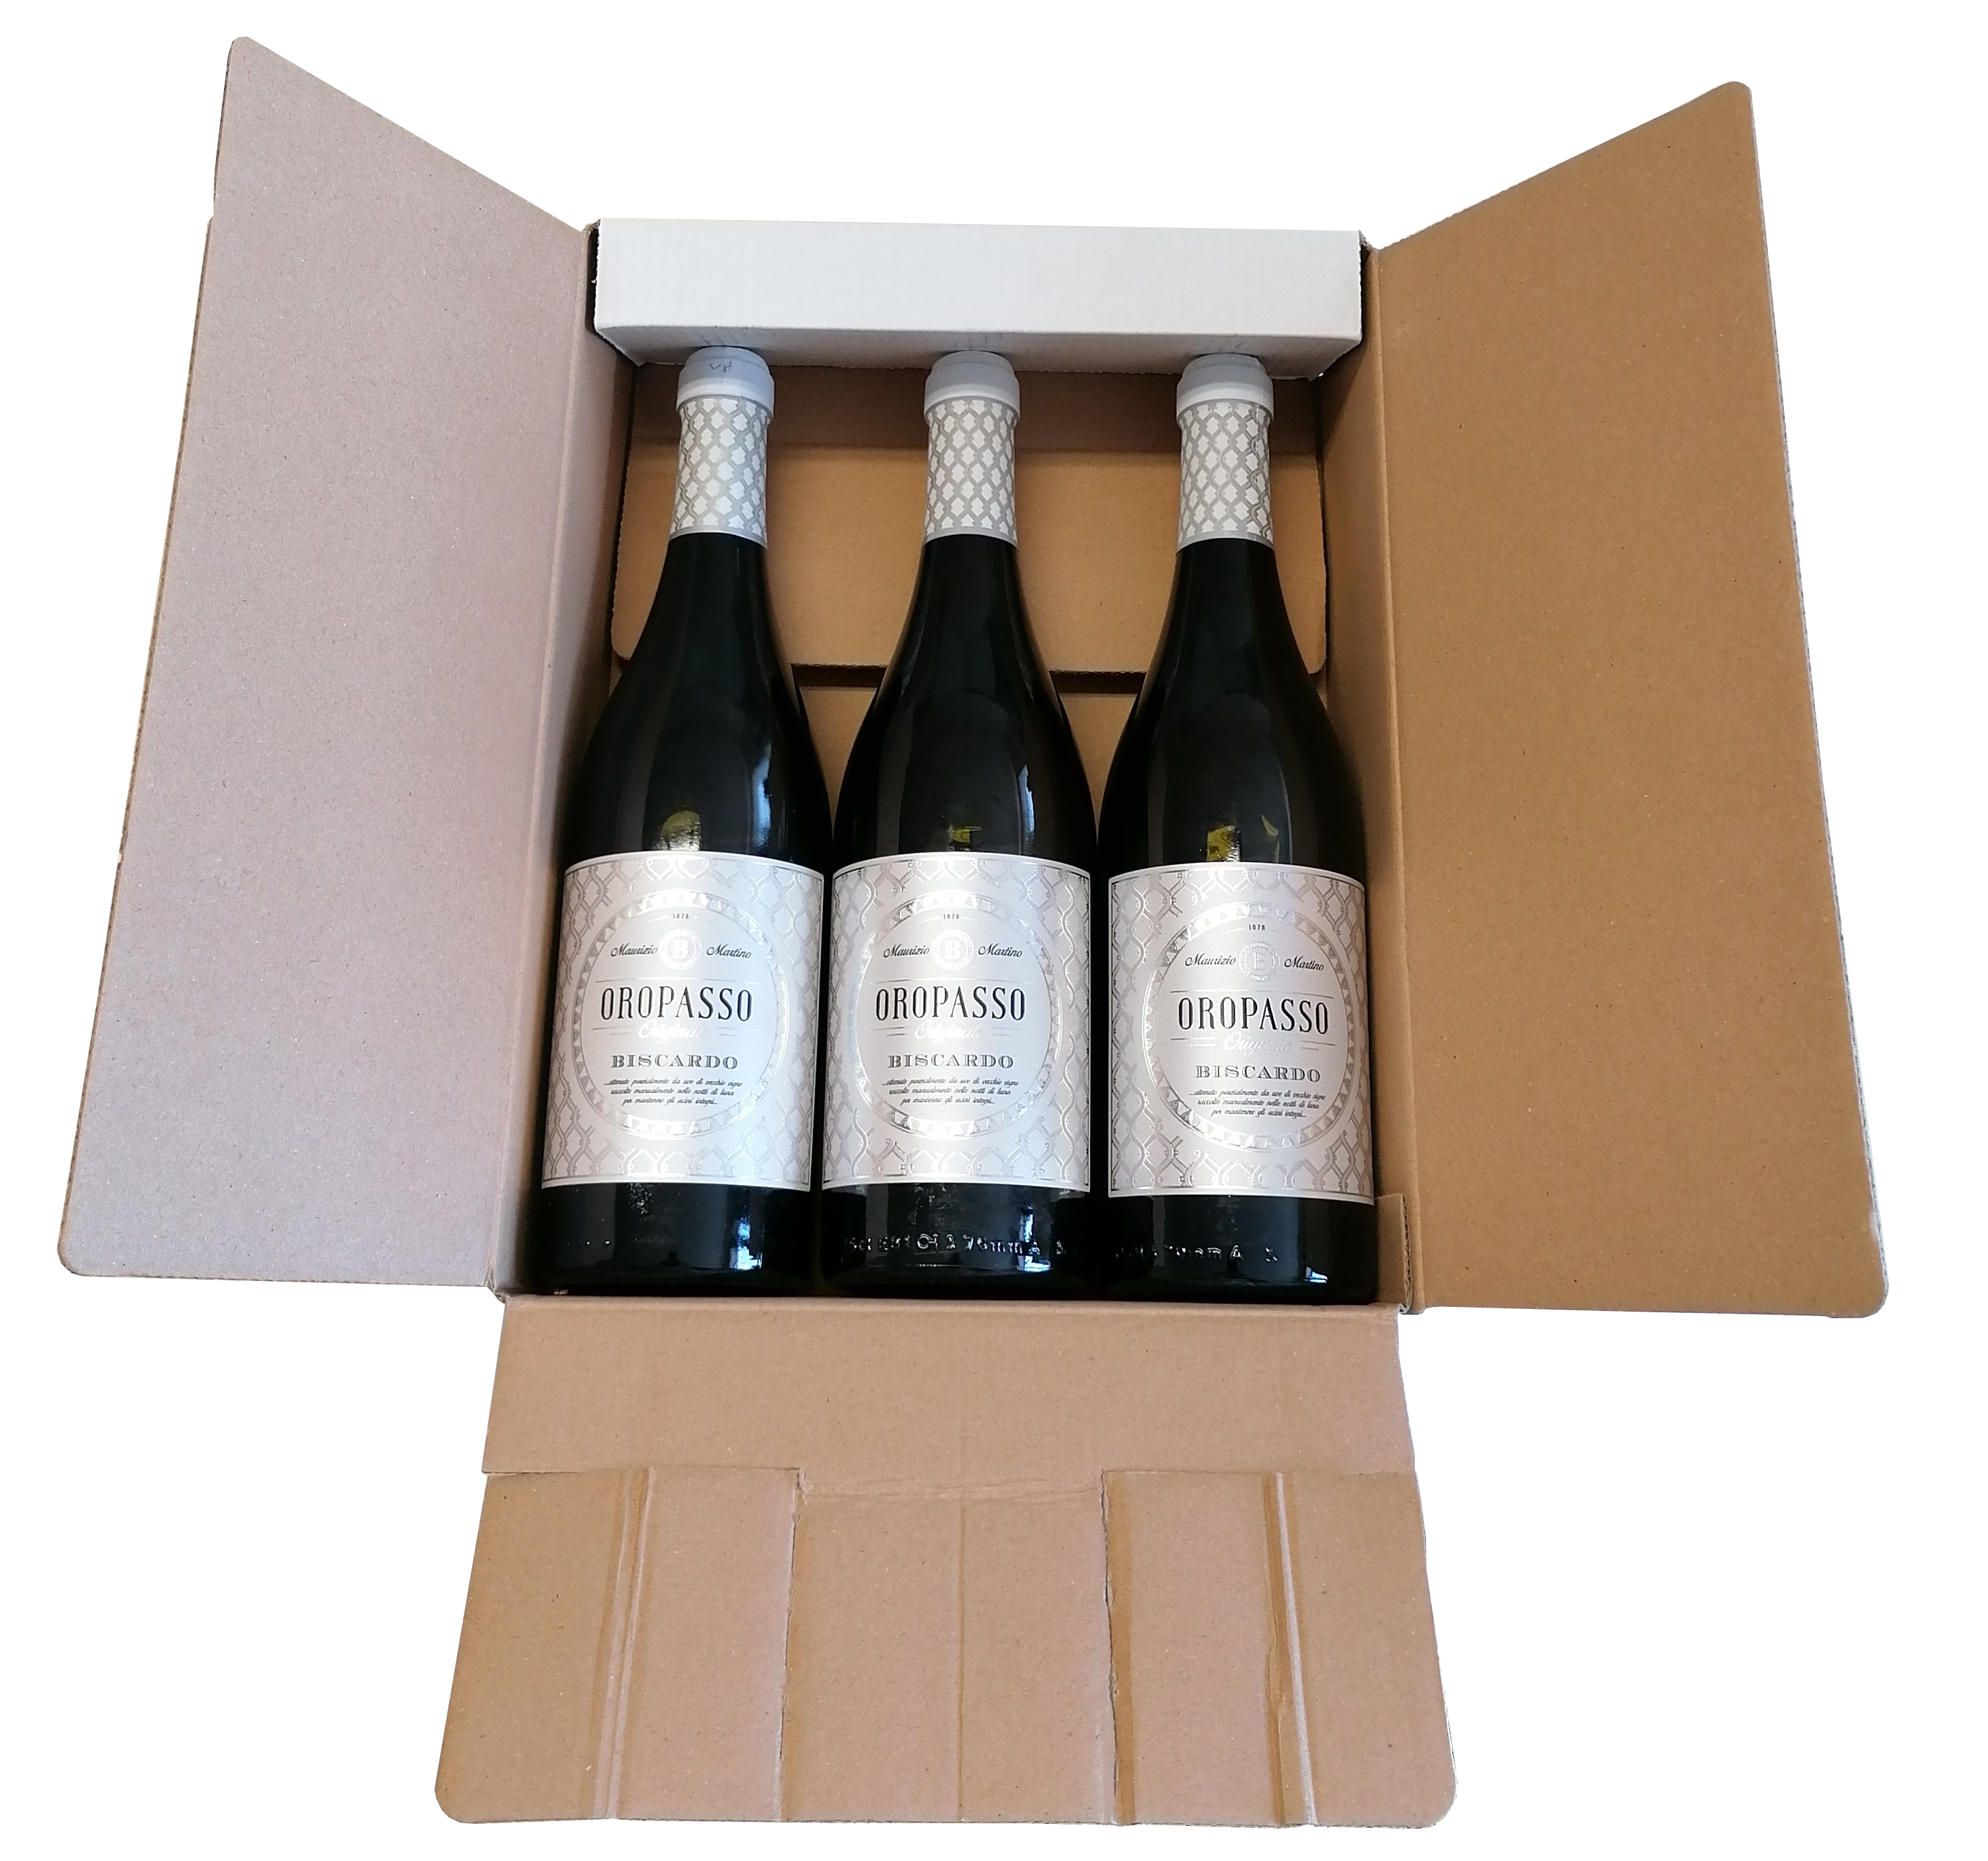 Dárkové balení 3 láhve Chardonnay-Garganega, Oropasso, Veneto, IGT, vinařství Biscardo 3x 0,75l, 13%